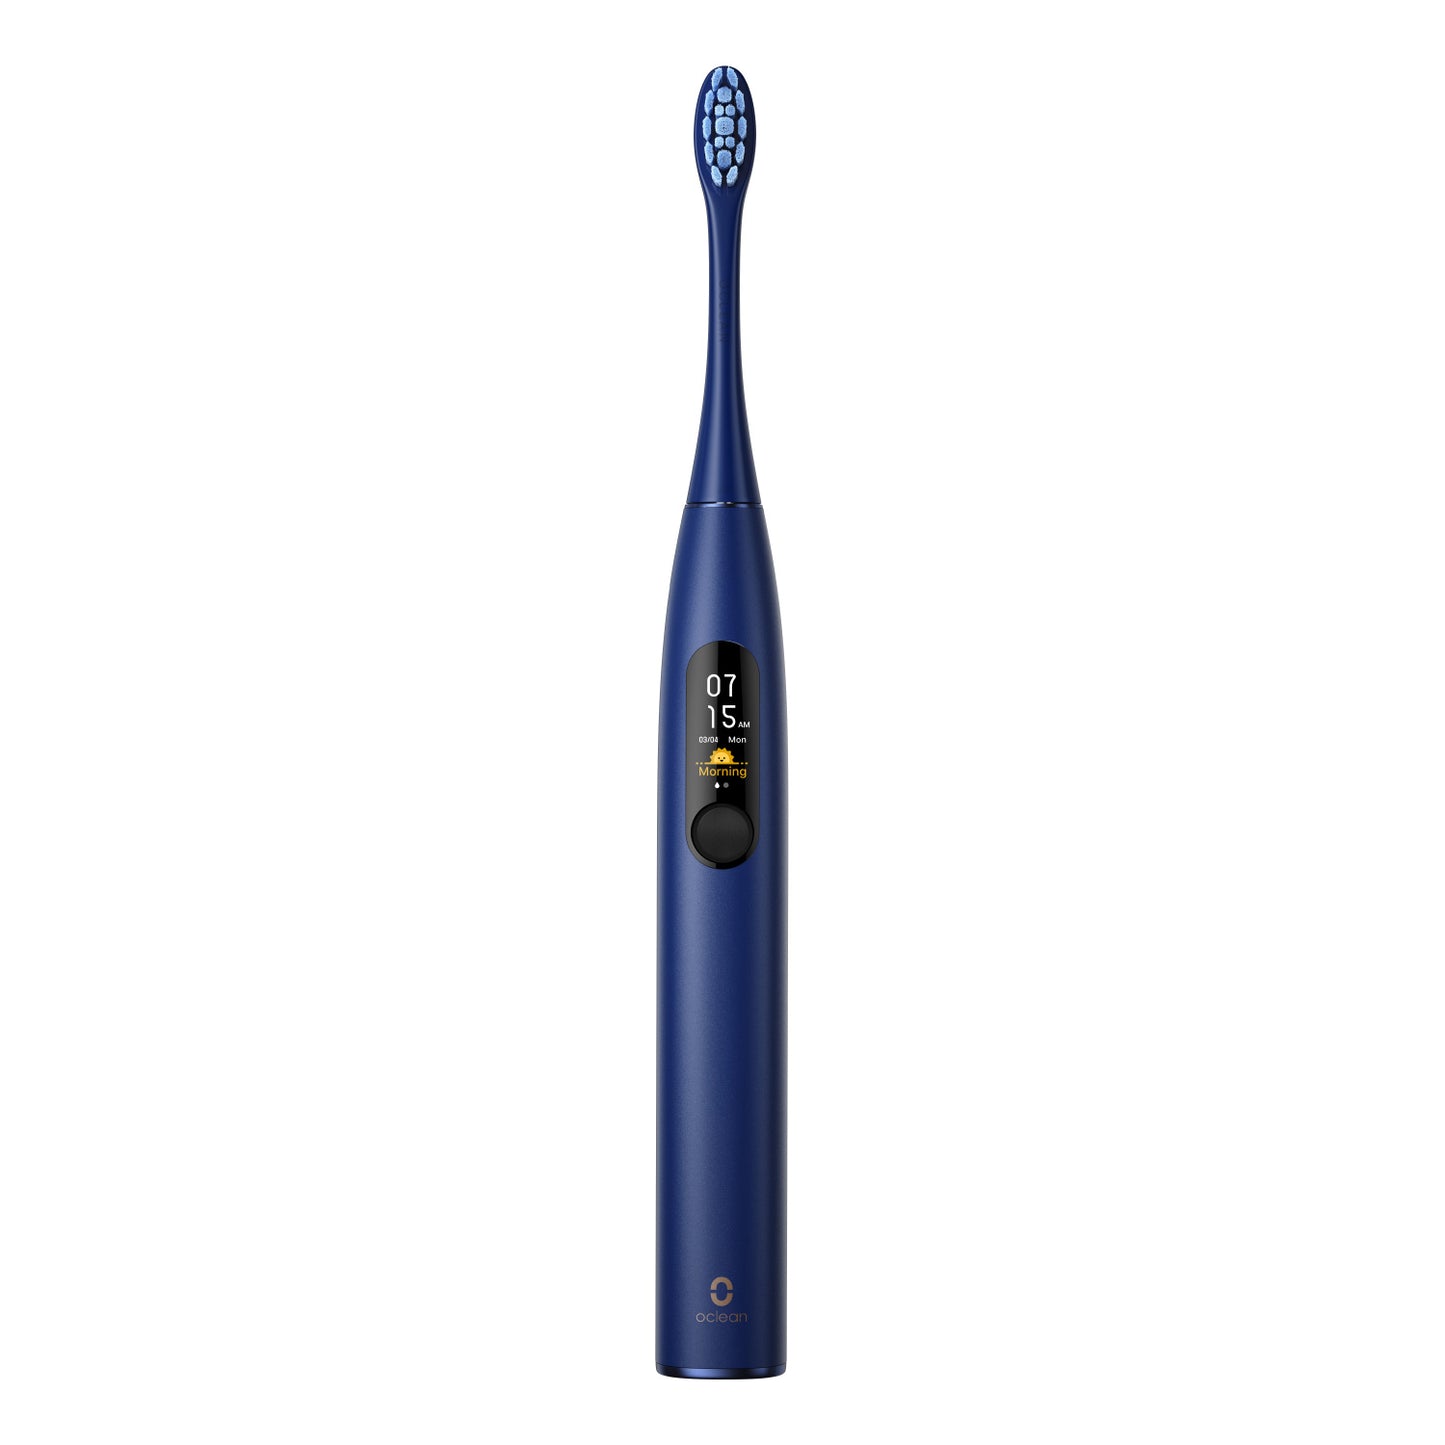 Escova de dentes eléctrica inteligente Oclean X Pro - Escovas de dentes - Oclean Global Store